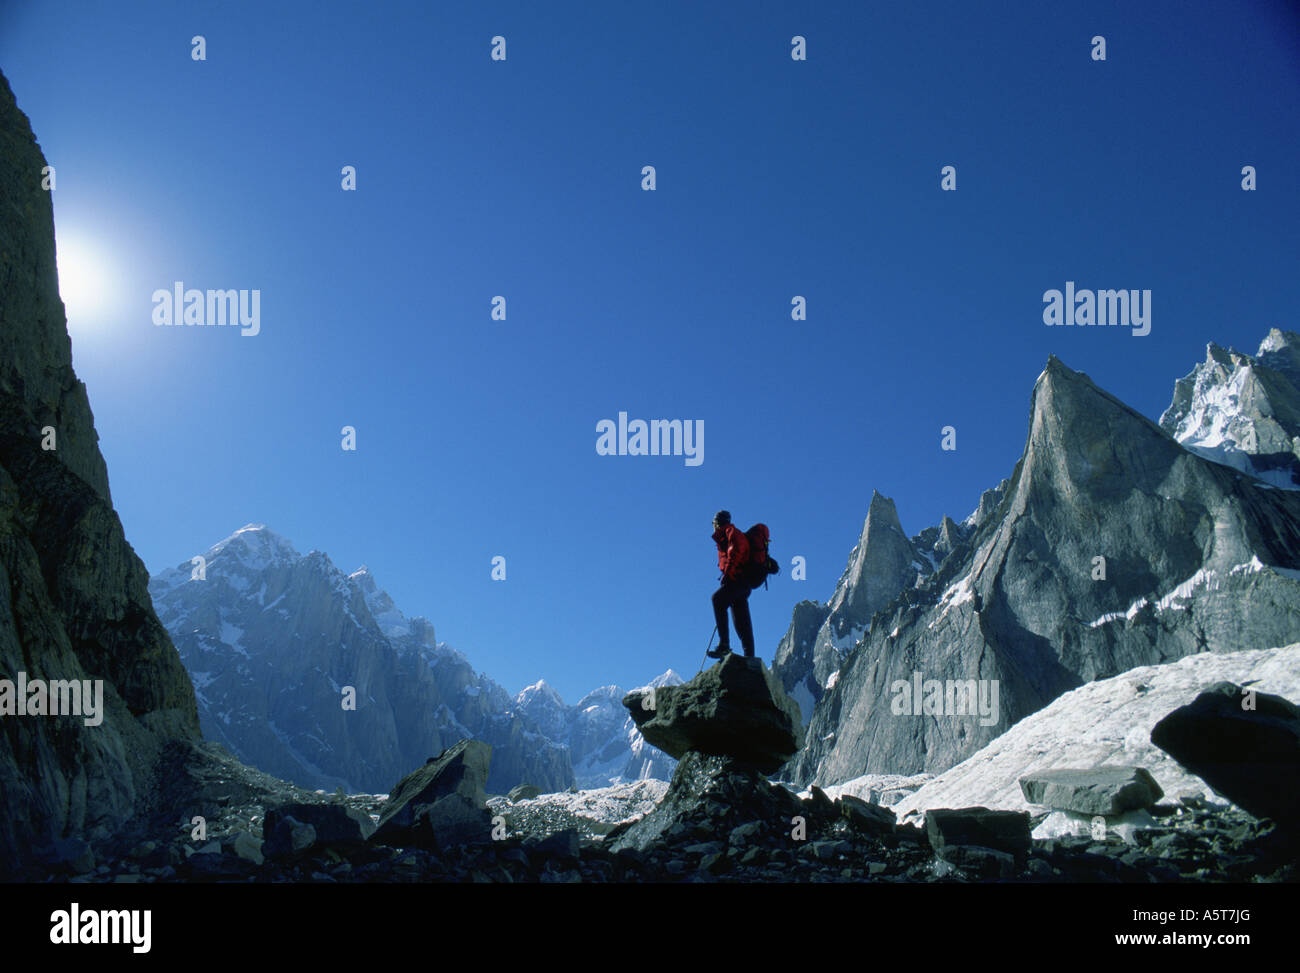 Conrad anker fotografías e imágenes de alta resolución - Alamy